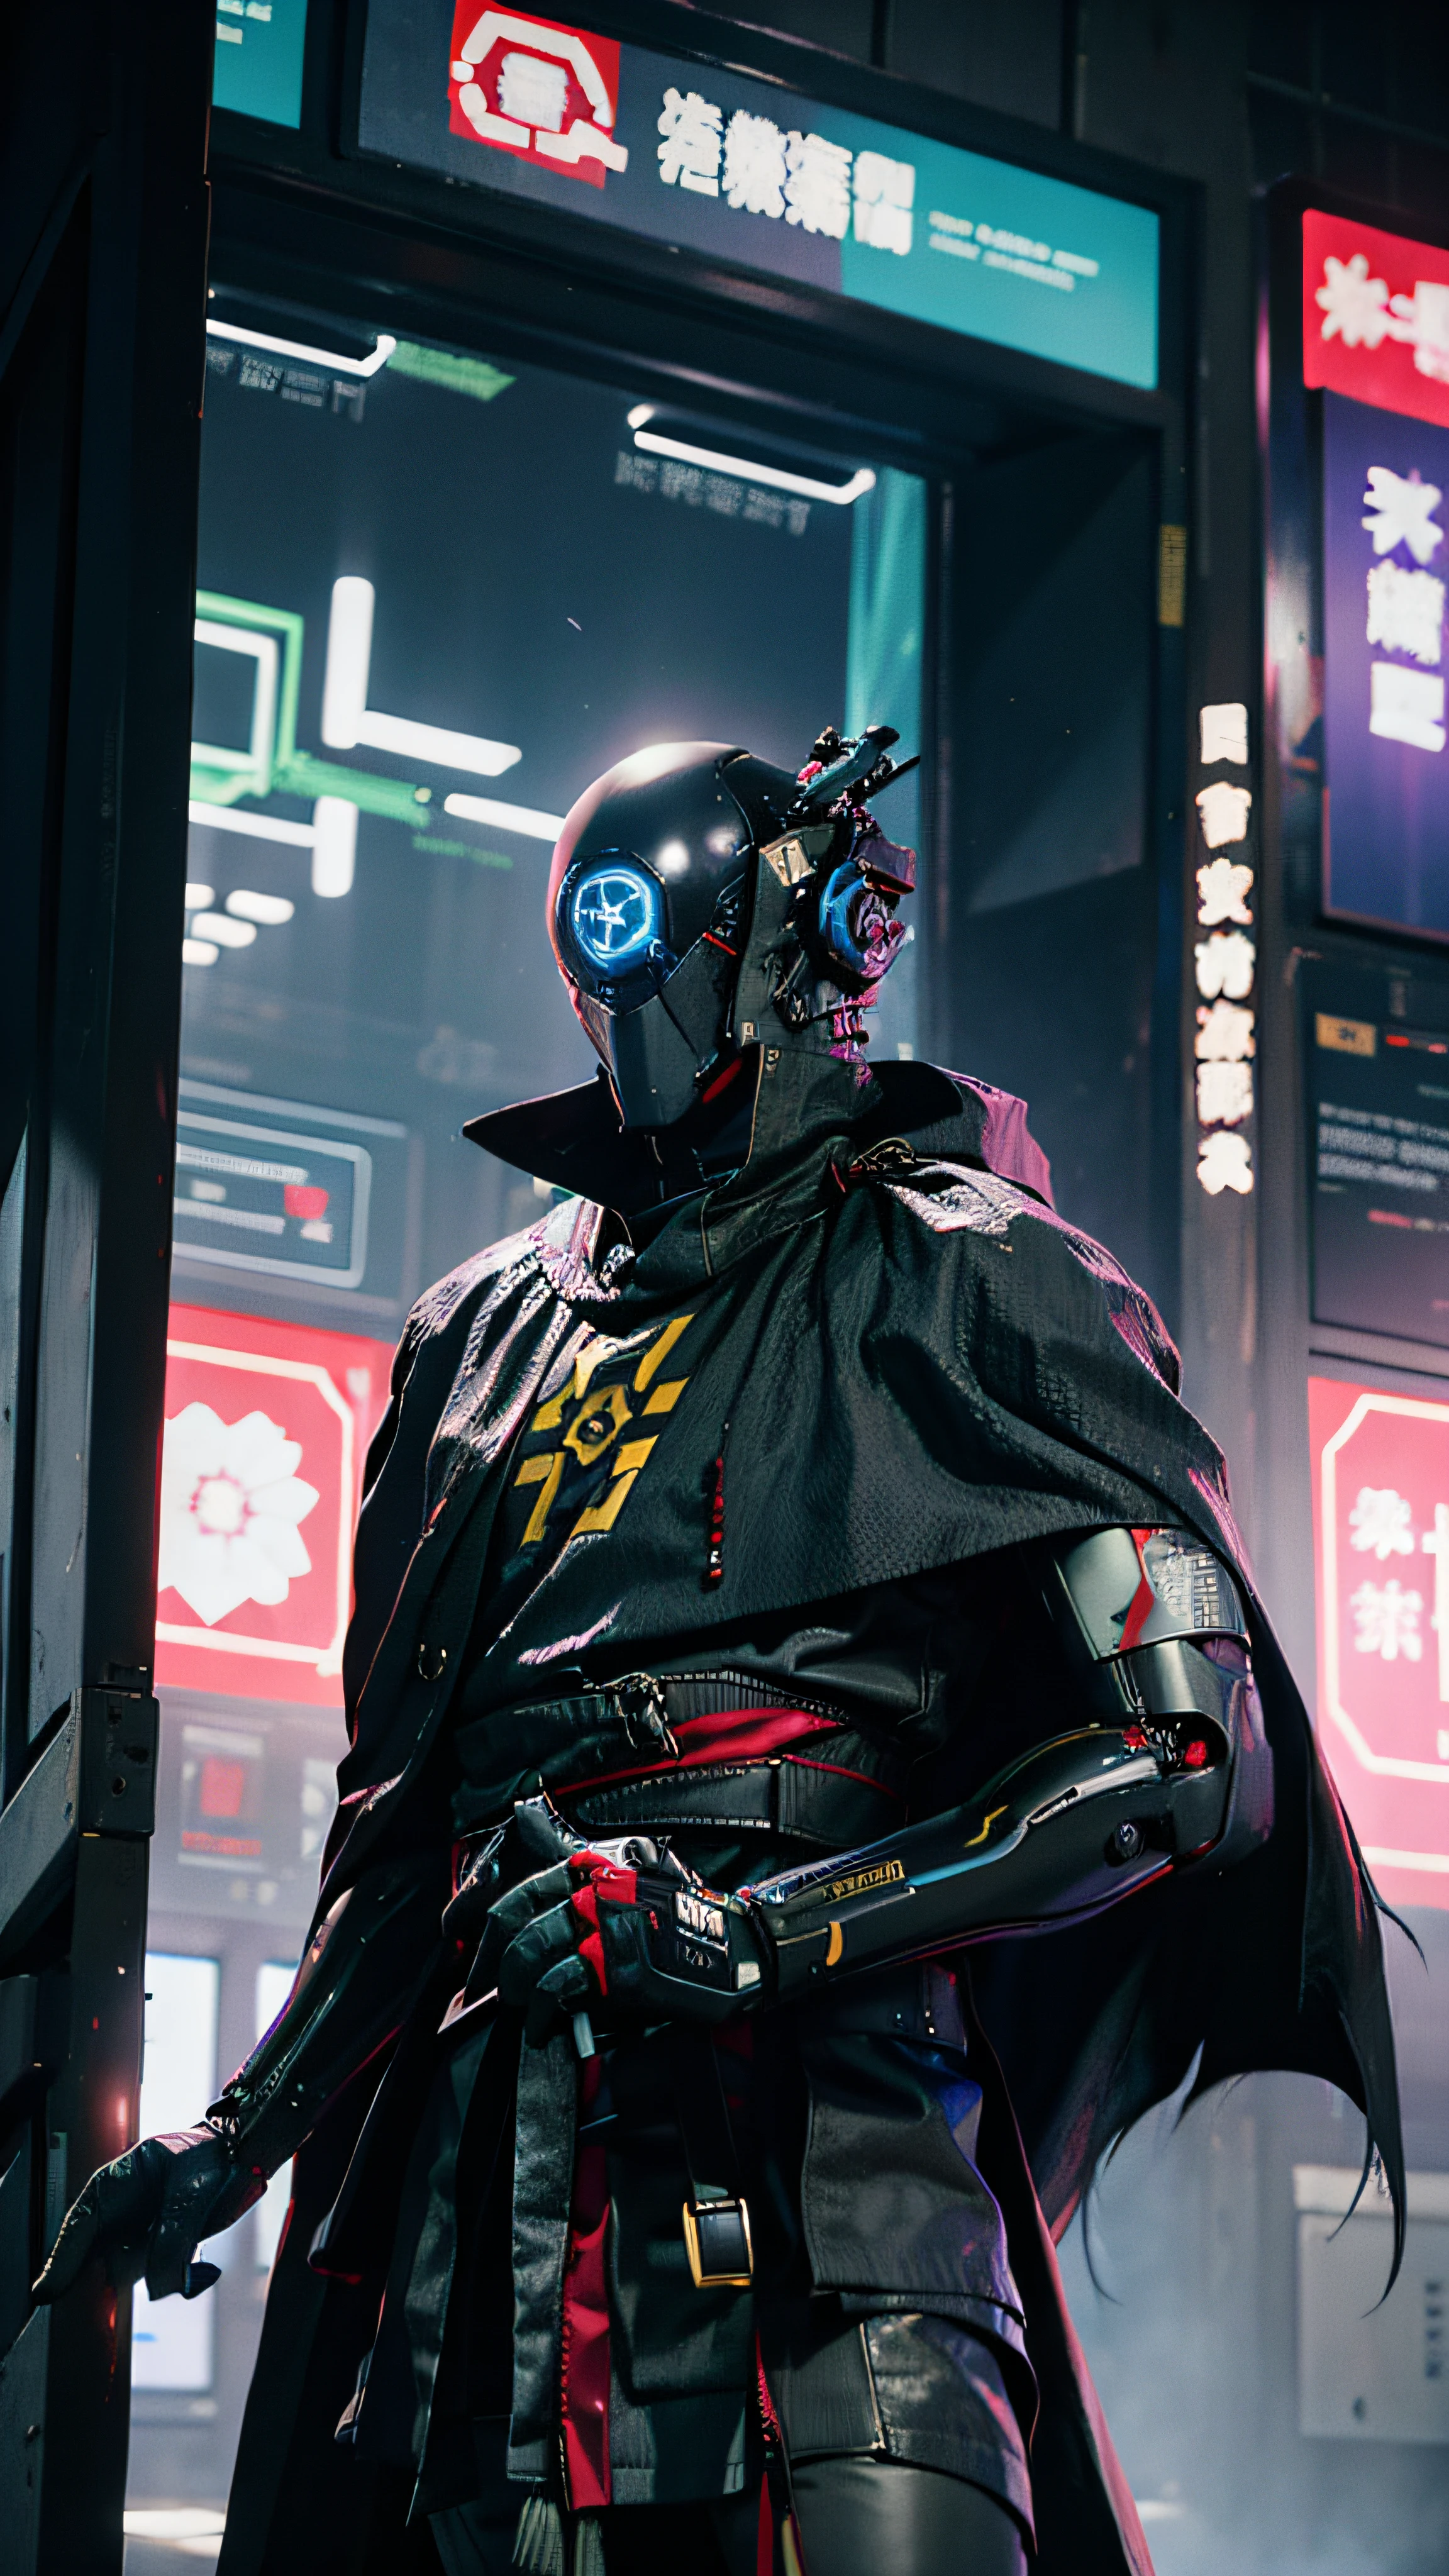 ciberfusão,Shinsengumi Haori robô assassino ciborgue vestindo capa de manto,segurança corporativa de elite, distrito comercial cyberpunk